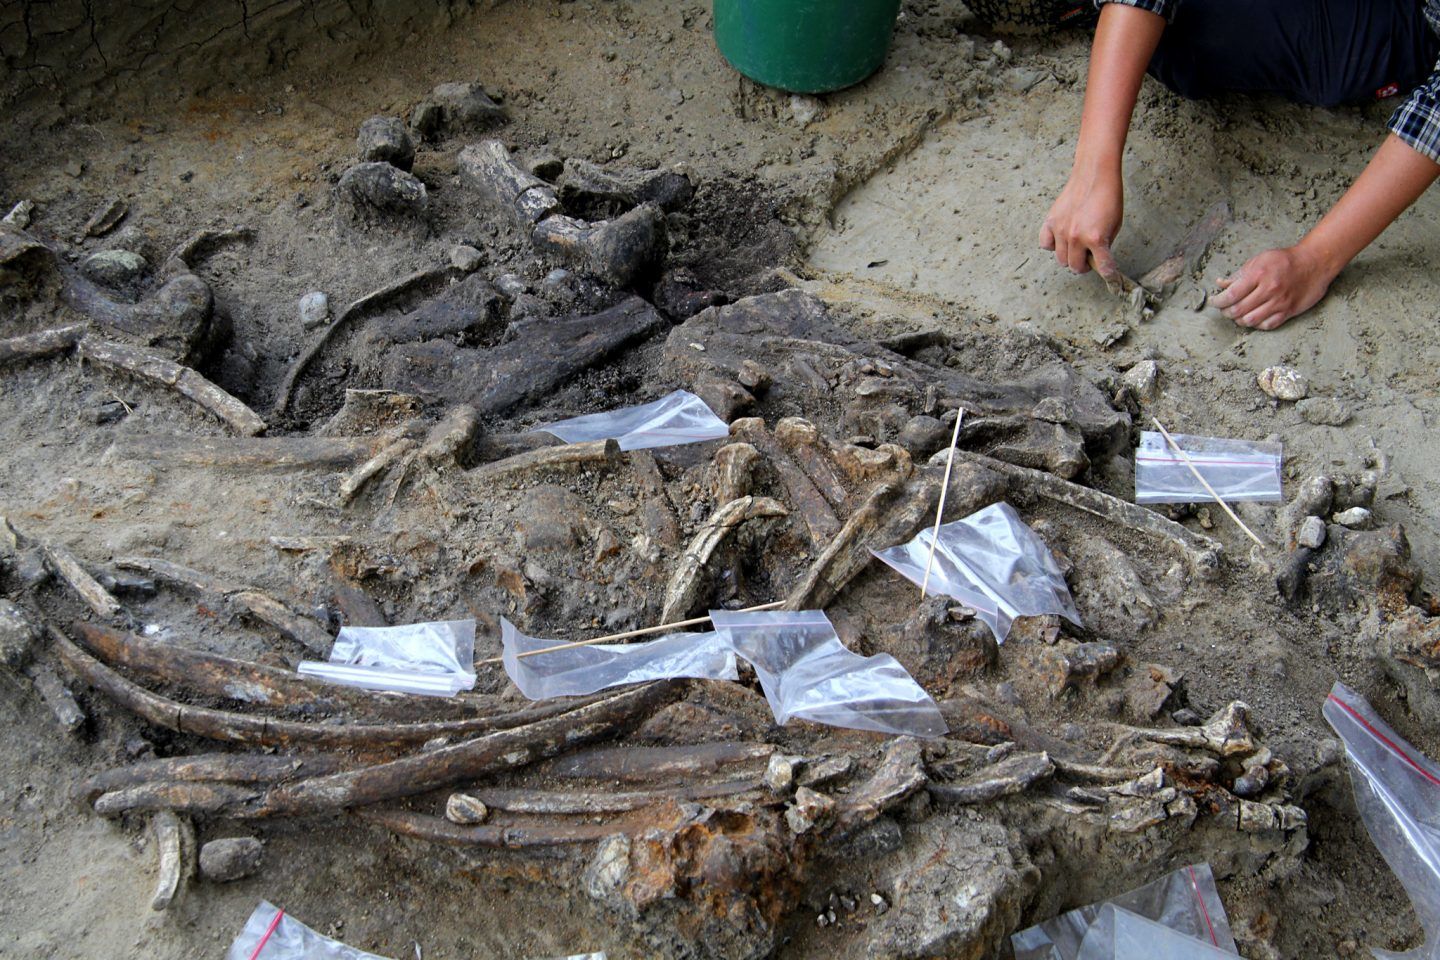 سلف غامض للإنسان كان يستخدم هذه الأدوات قبل 700 ألف سنة في الفلبين